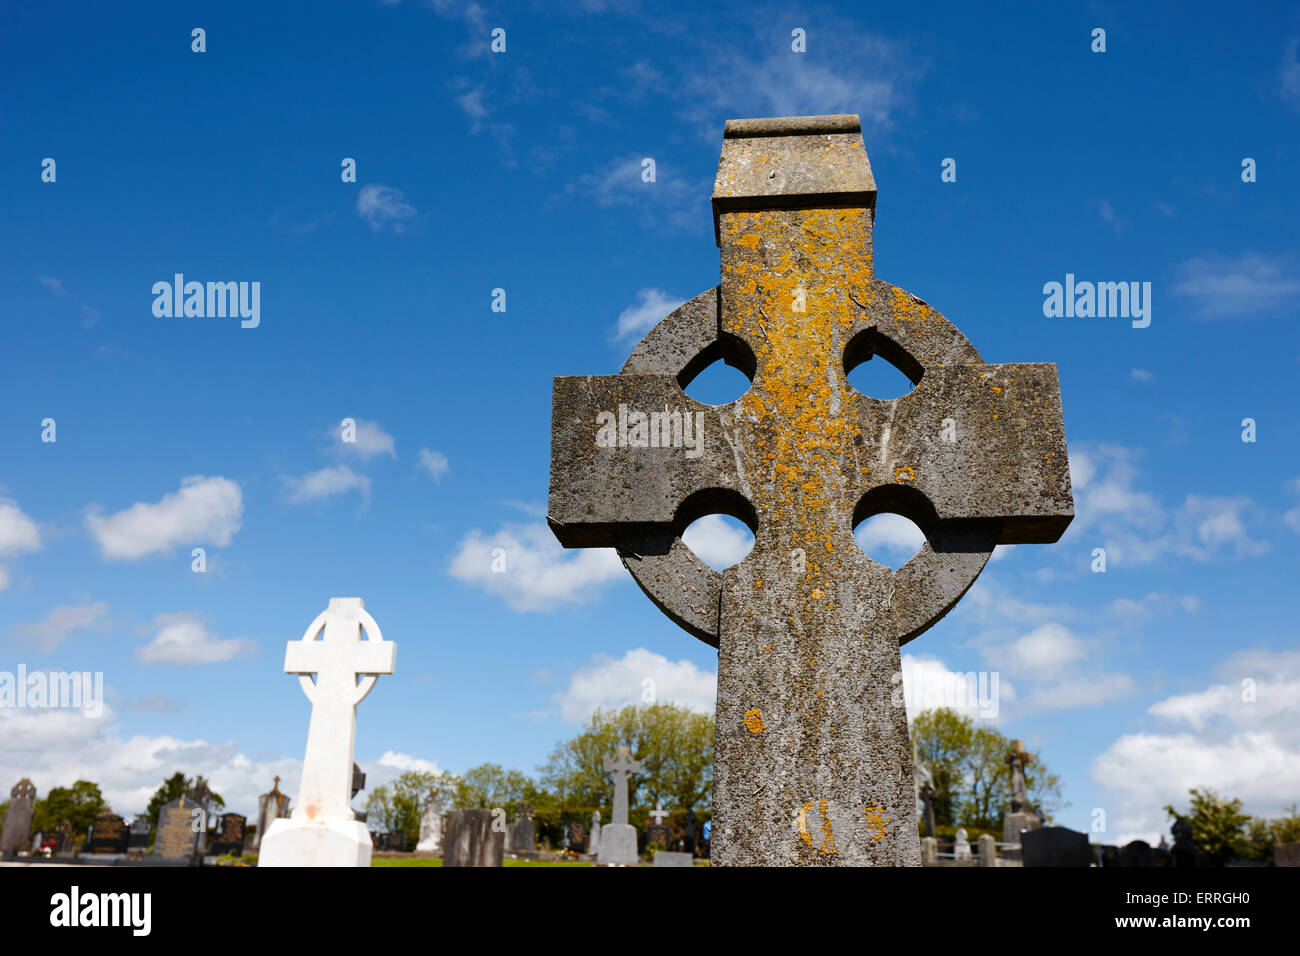 Cruces celtas irlandeses rurales en un cementerio en el condado de Monaghan tydavnet república de Irlanda Foto de stock